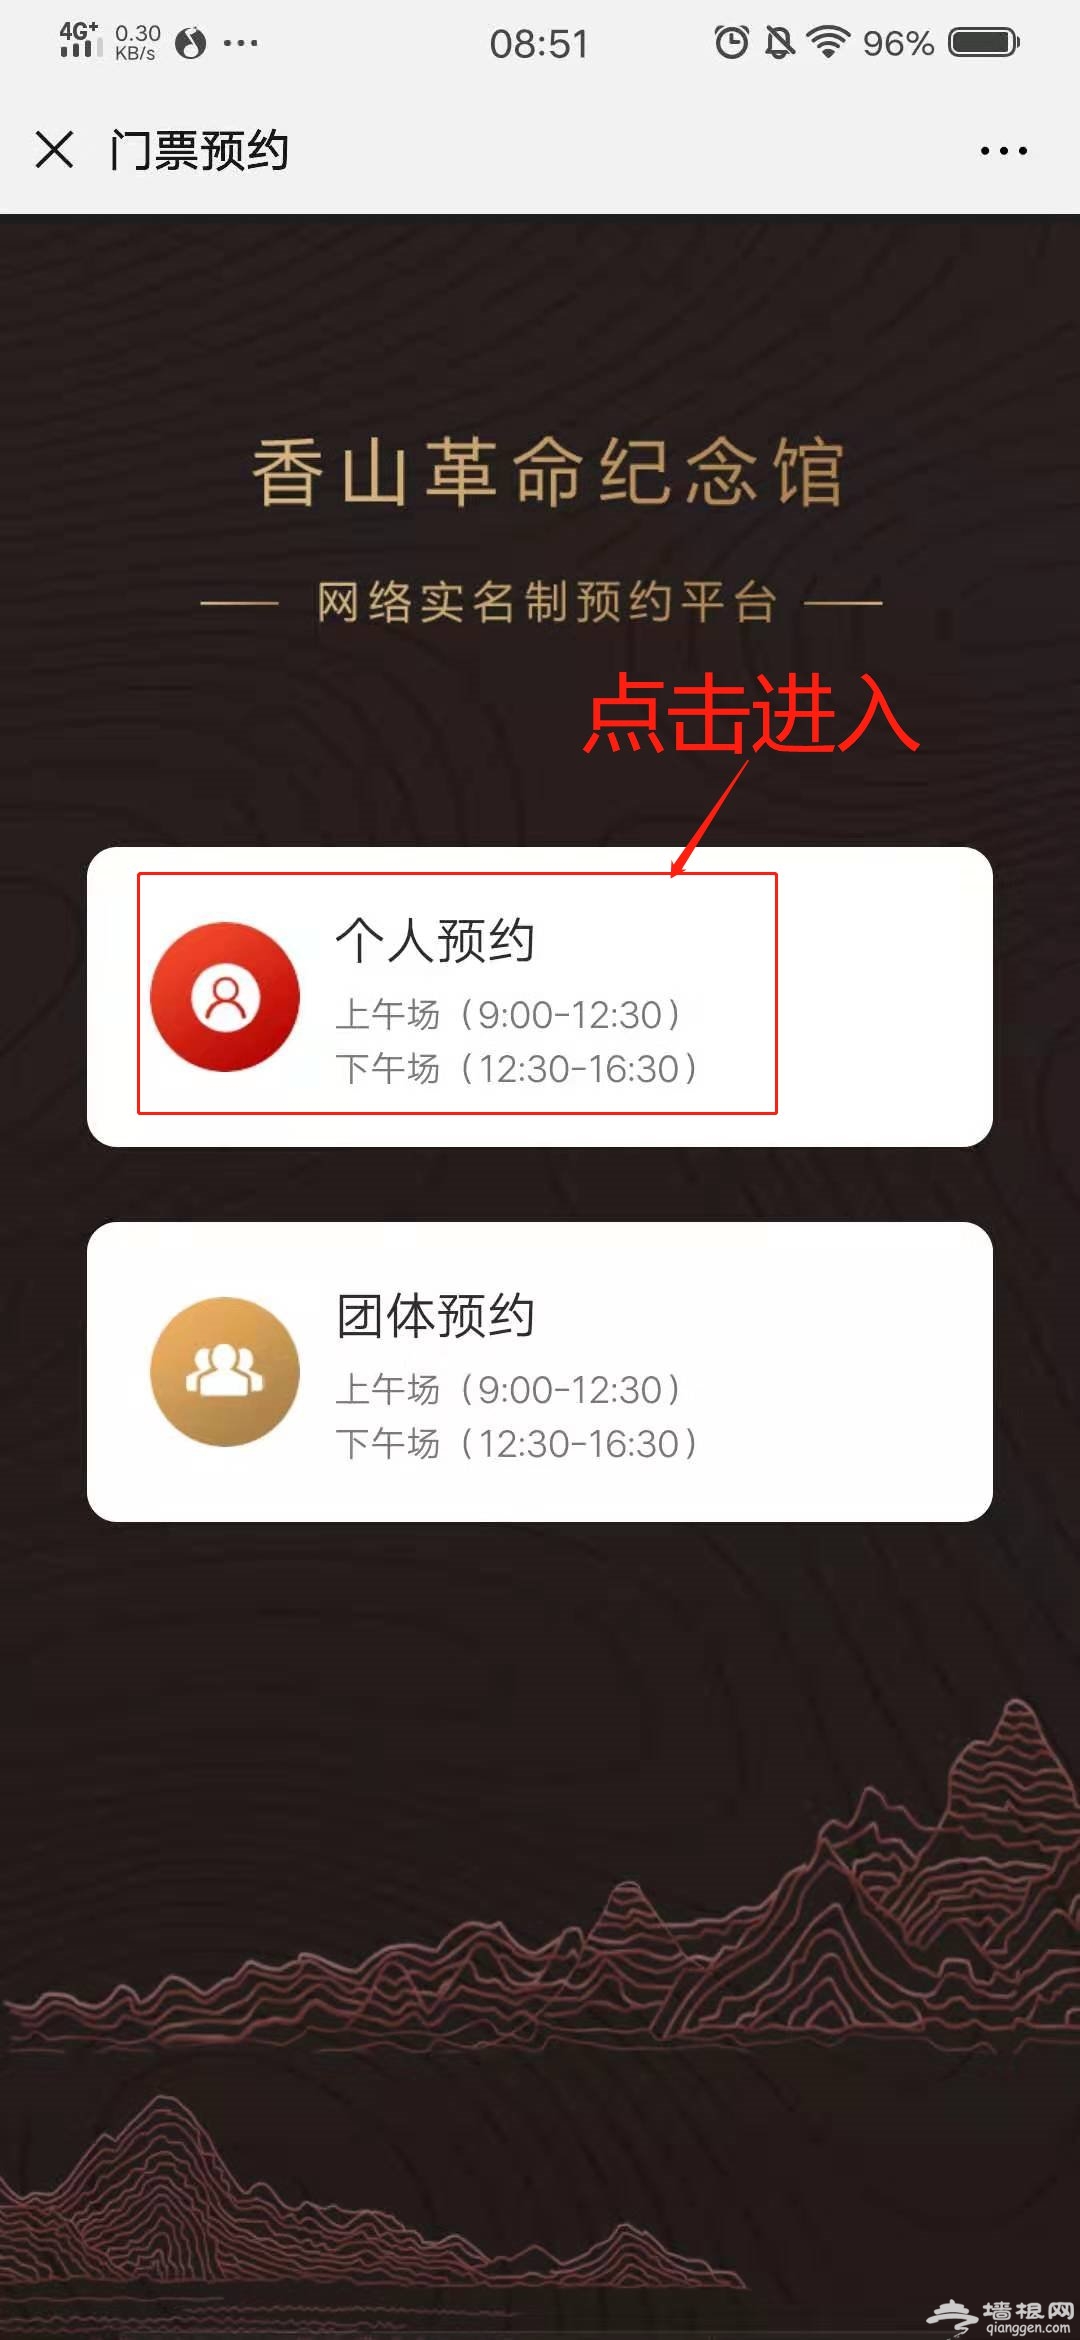 香山革命纪念馆在哪里预约?官网预约+微信预约入口